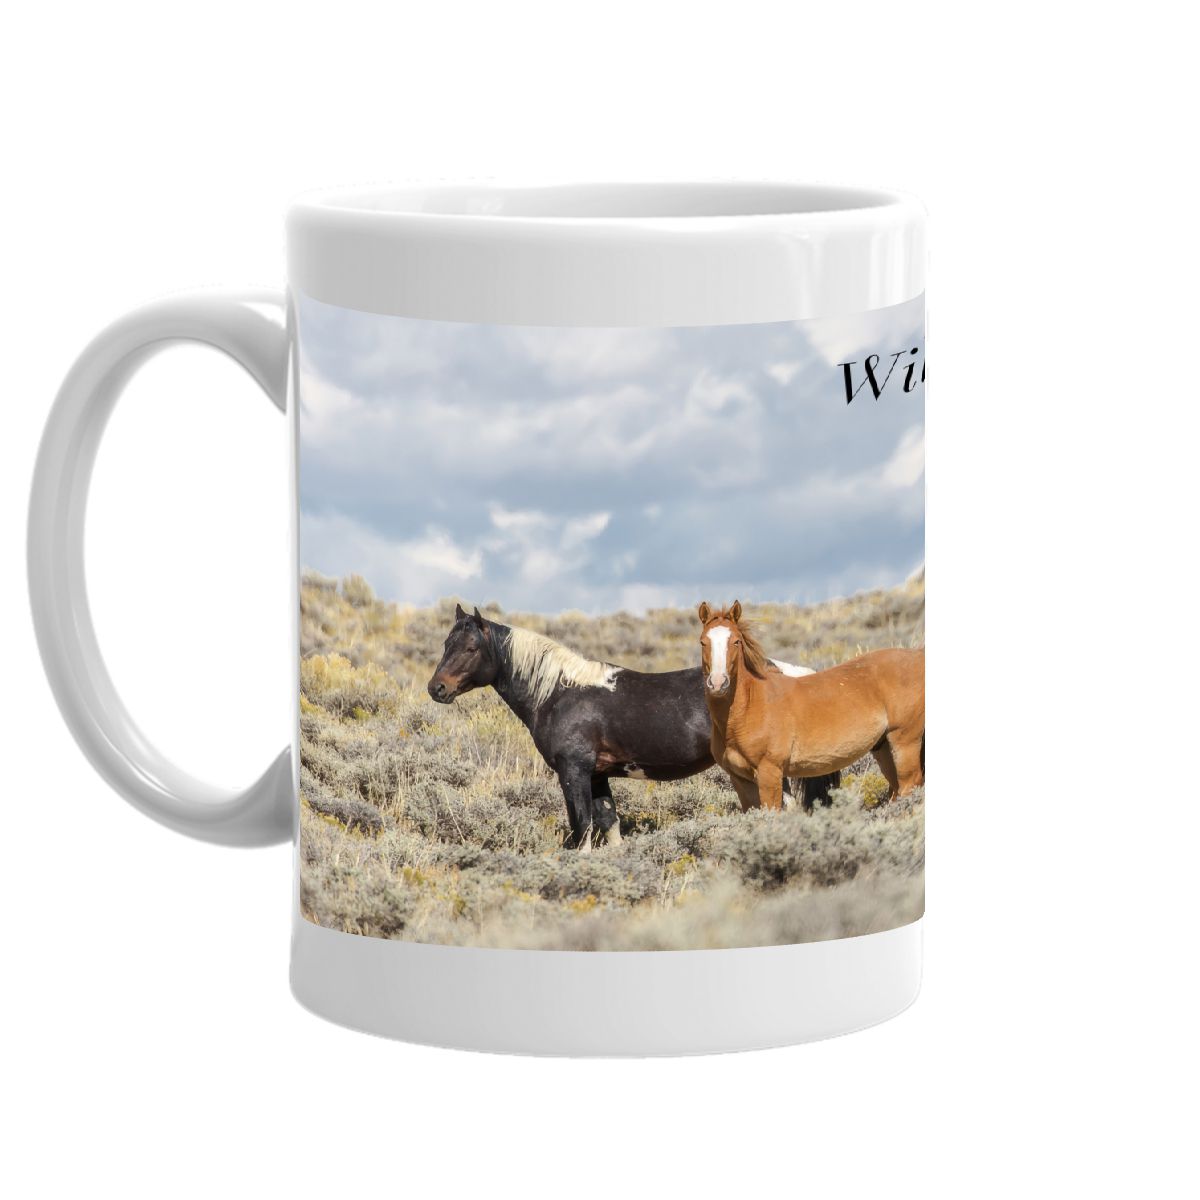 Wild Horse Mug